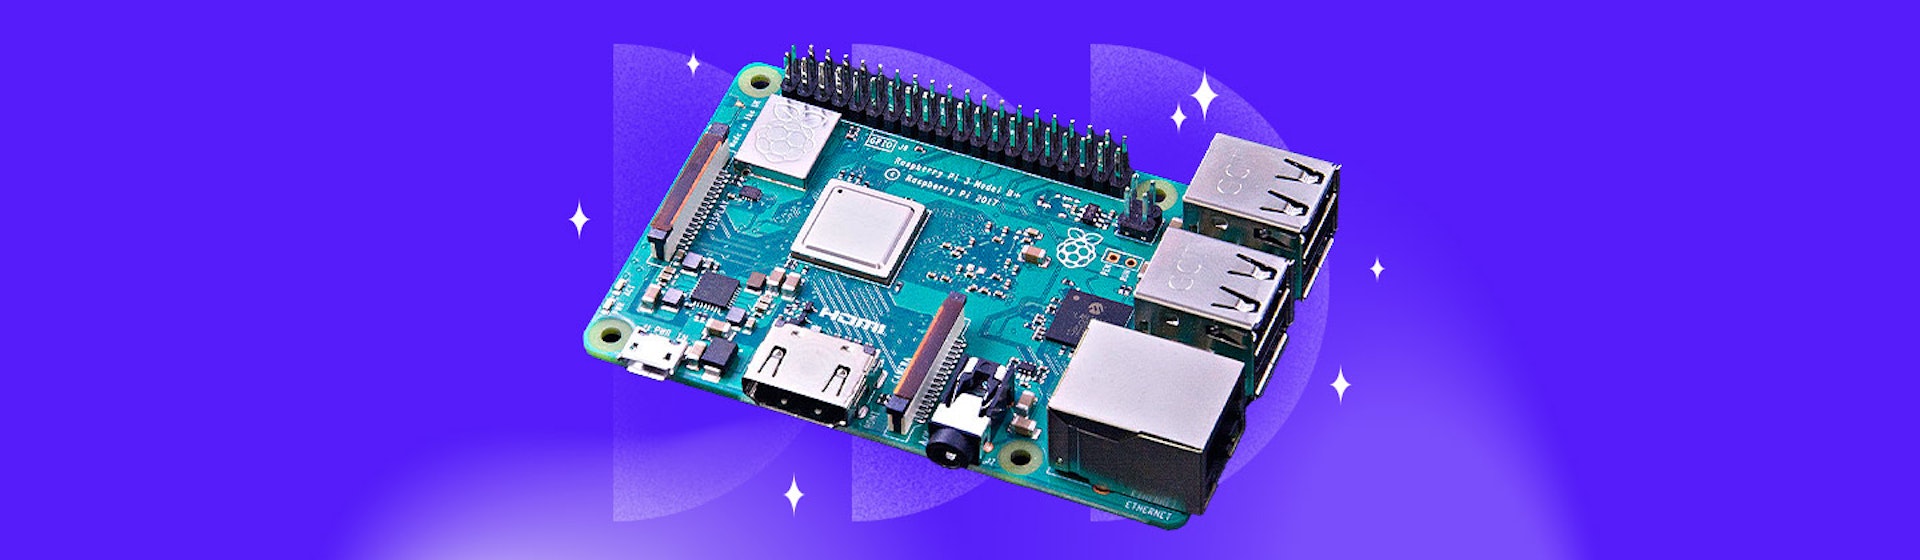 Raspberry Pi: ¡Desata tu lado maker y crea tus propios proyectos electrónicos!